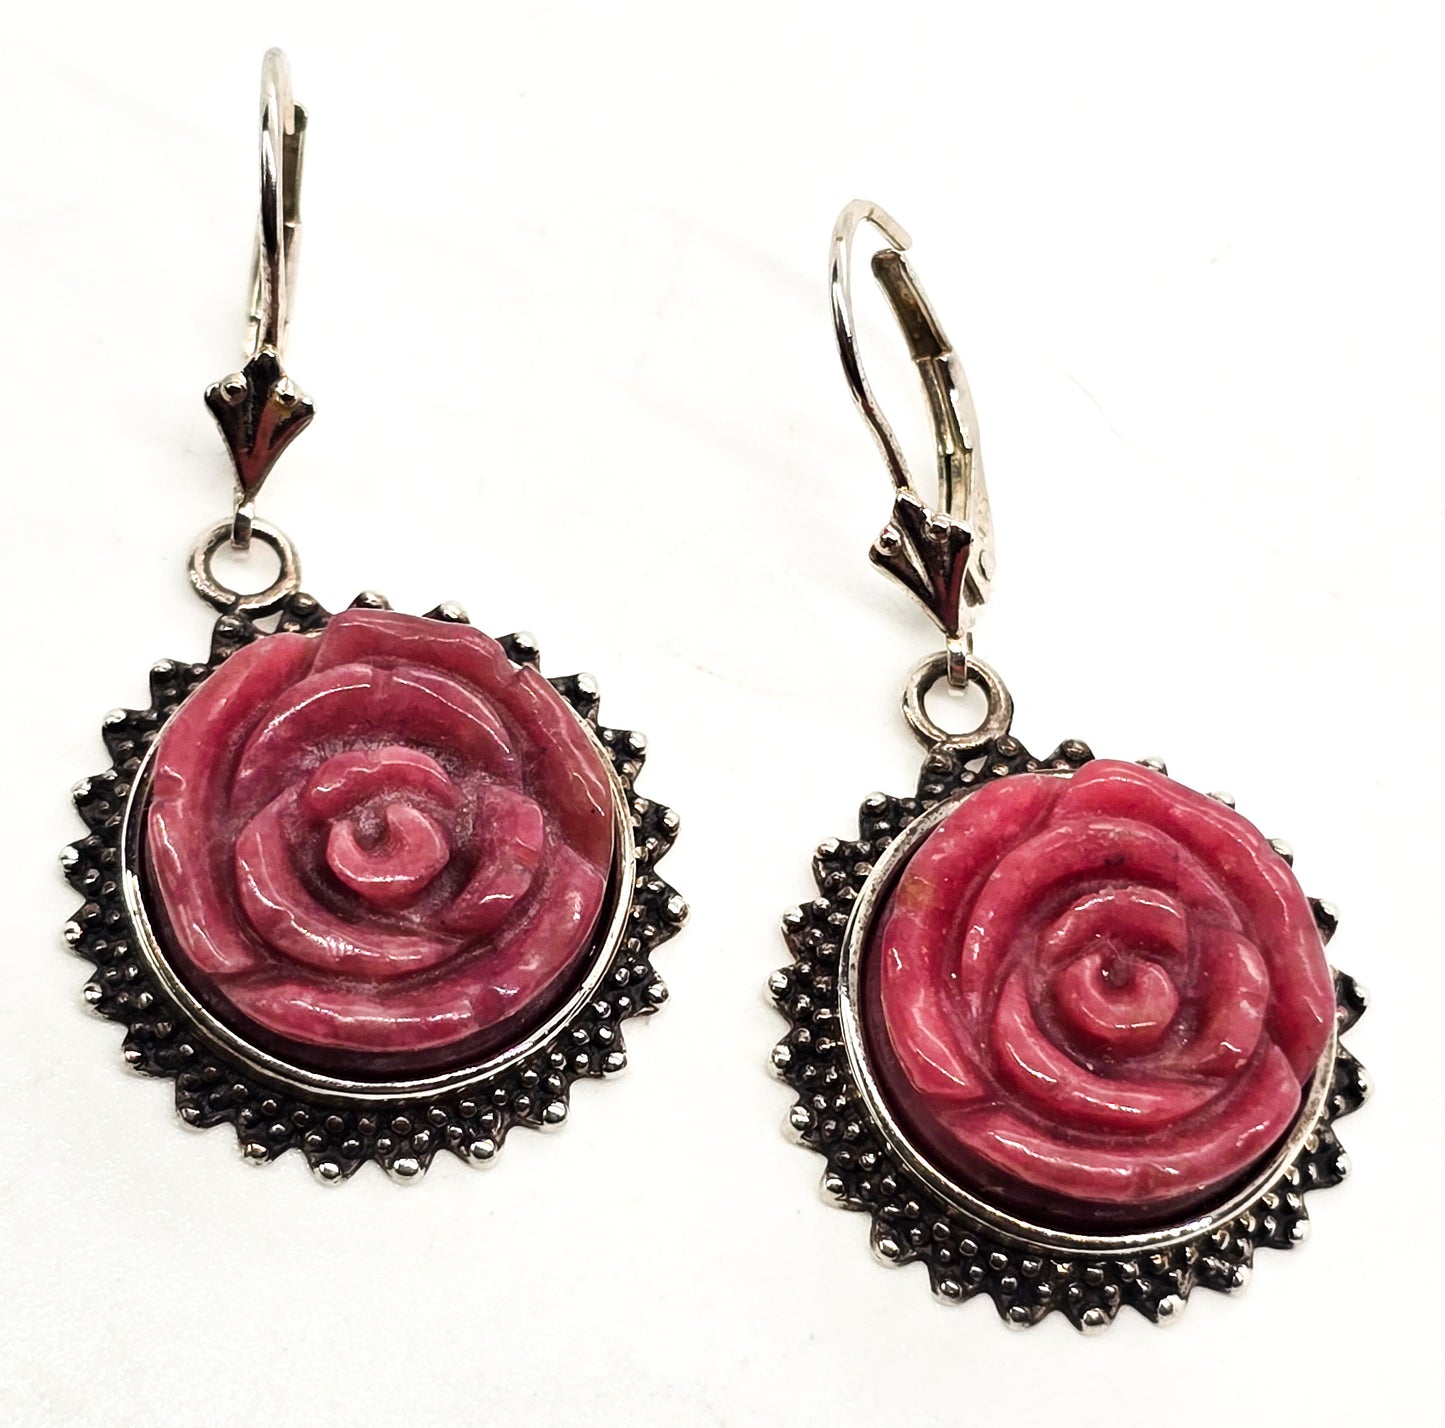 Amy Kahn Russell AKR Carved Rhodonite flower pink gemstone sterling silver earrings